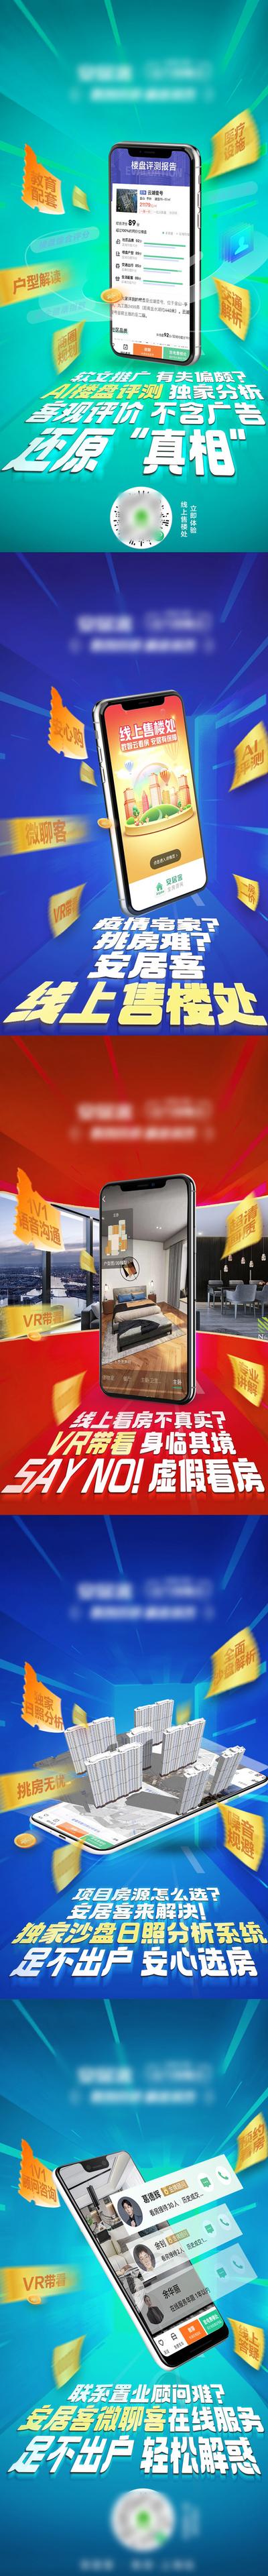 【南门网】海报 房地产 手机 VR 线上 看房 价值点 产品 功能 介绍 系列